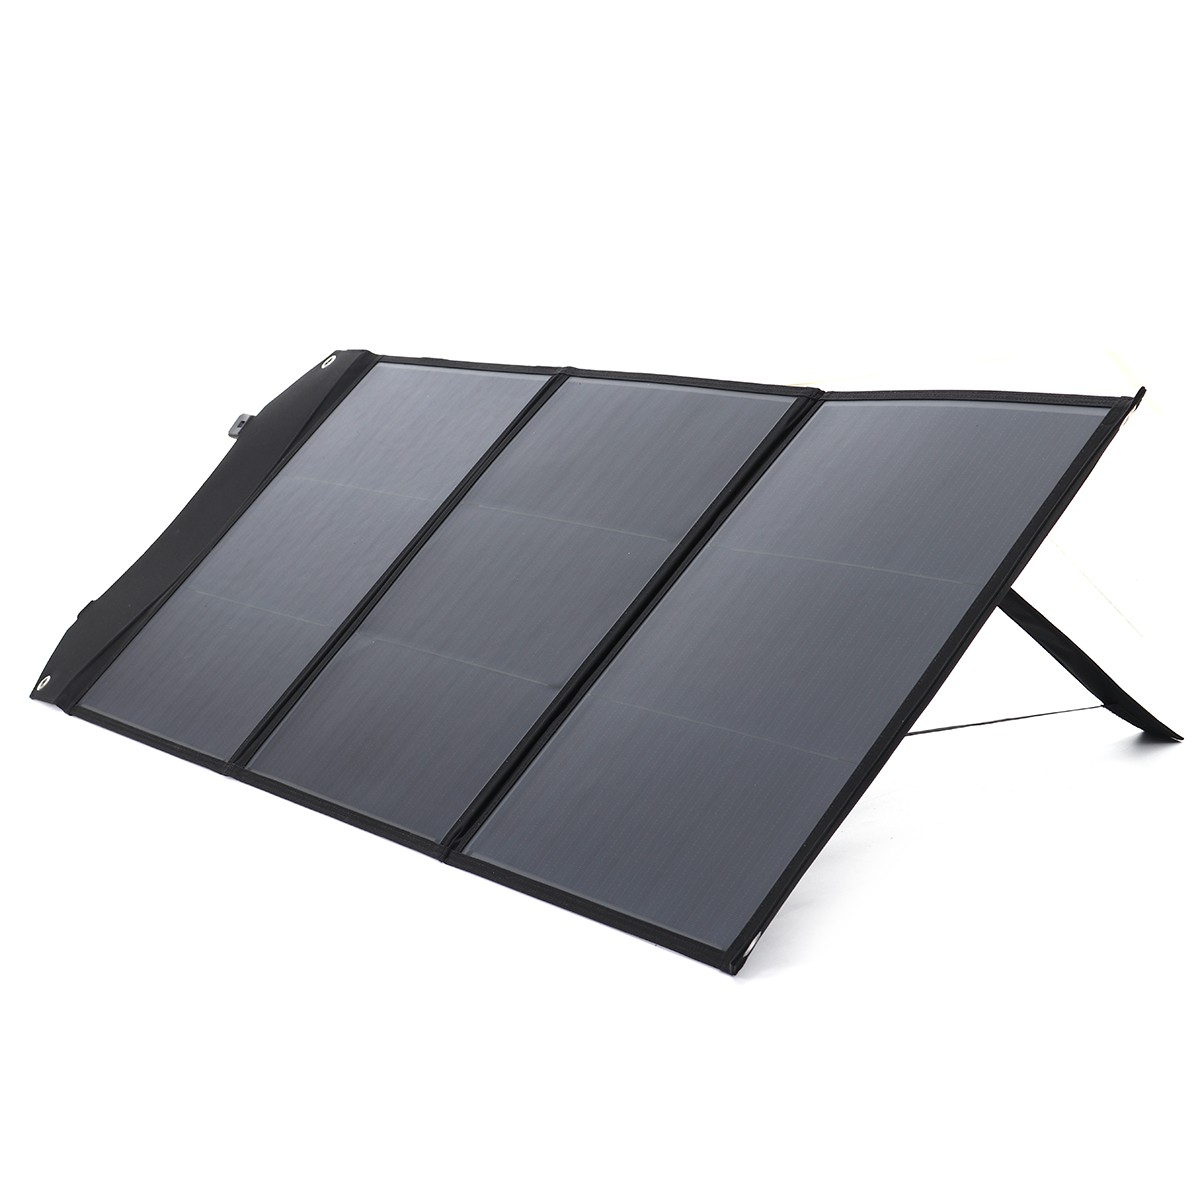 Panel Solar de 105W y 20V, cargador Solar portátil plegable impermeable para mascotas, salida CC y USB, carga rápida QC 3,0 para Camping, RV, yate, coche y camión